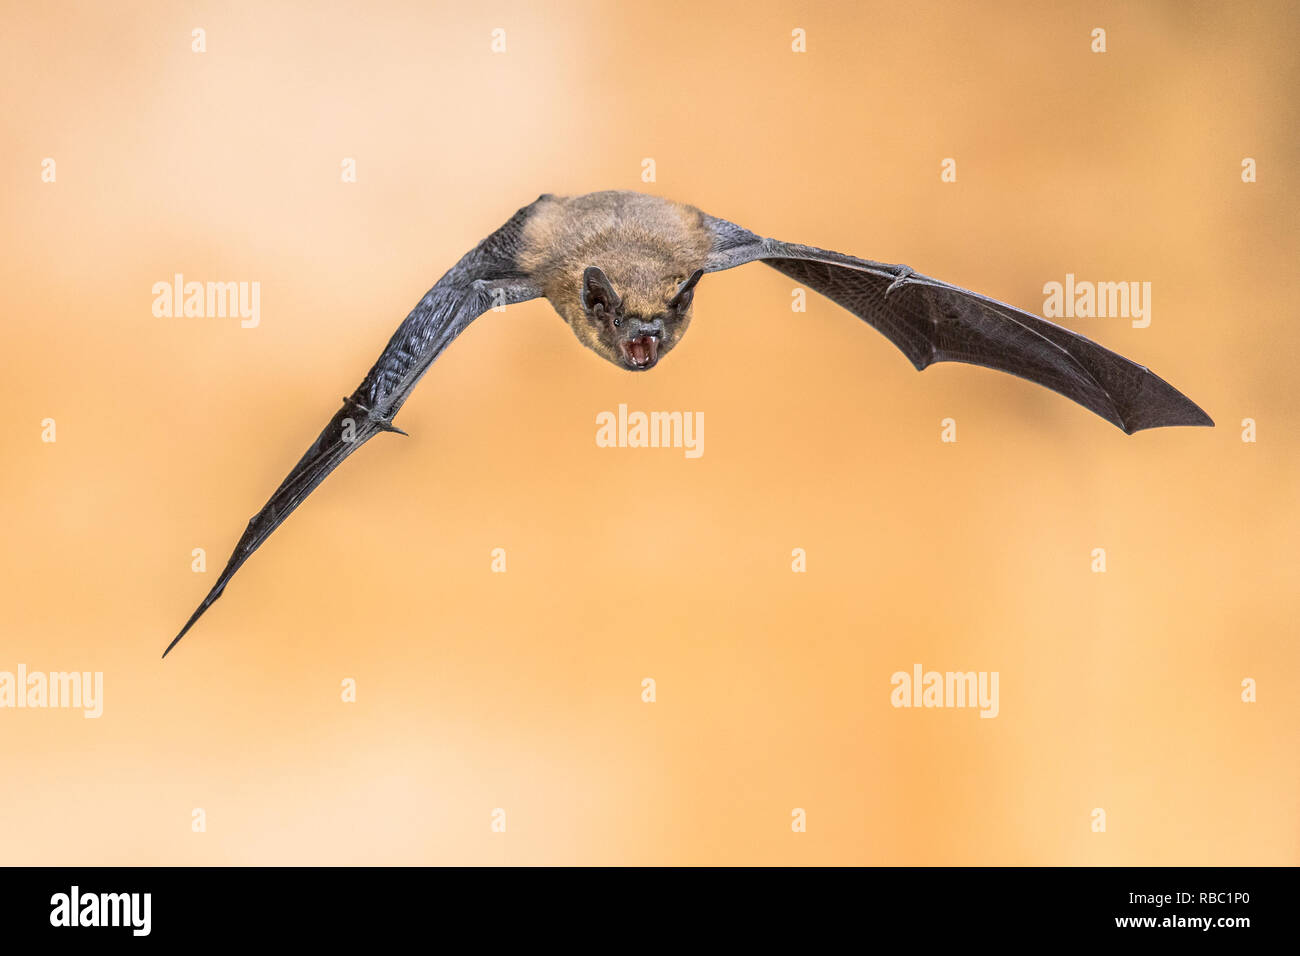 Flying Pipistrelle bat (Pipistrellus pipistrellus) High Speed Fotografie Schuß von echolocating Tier auf braunem Hintergrund. Fledermäuse shout sonar Impulse Stockfoto